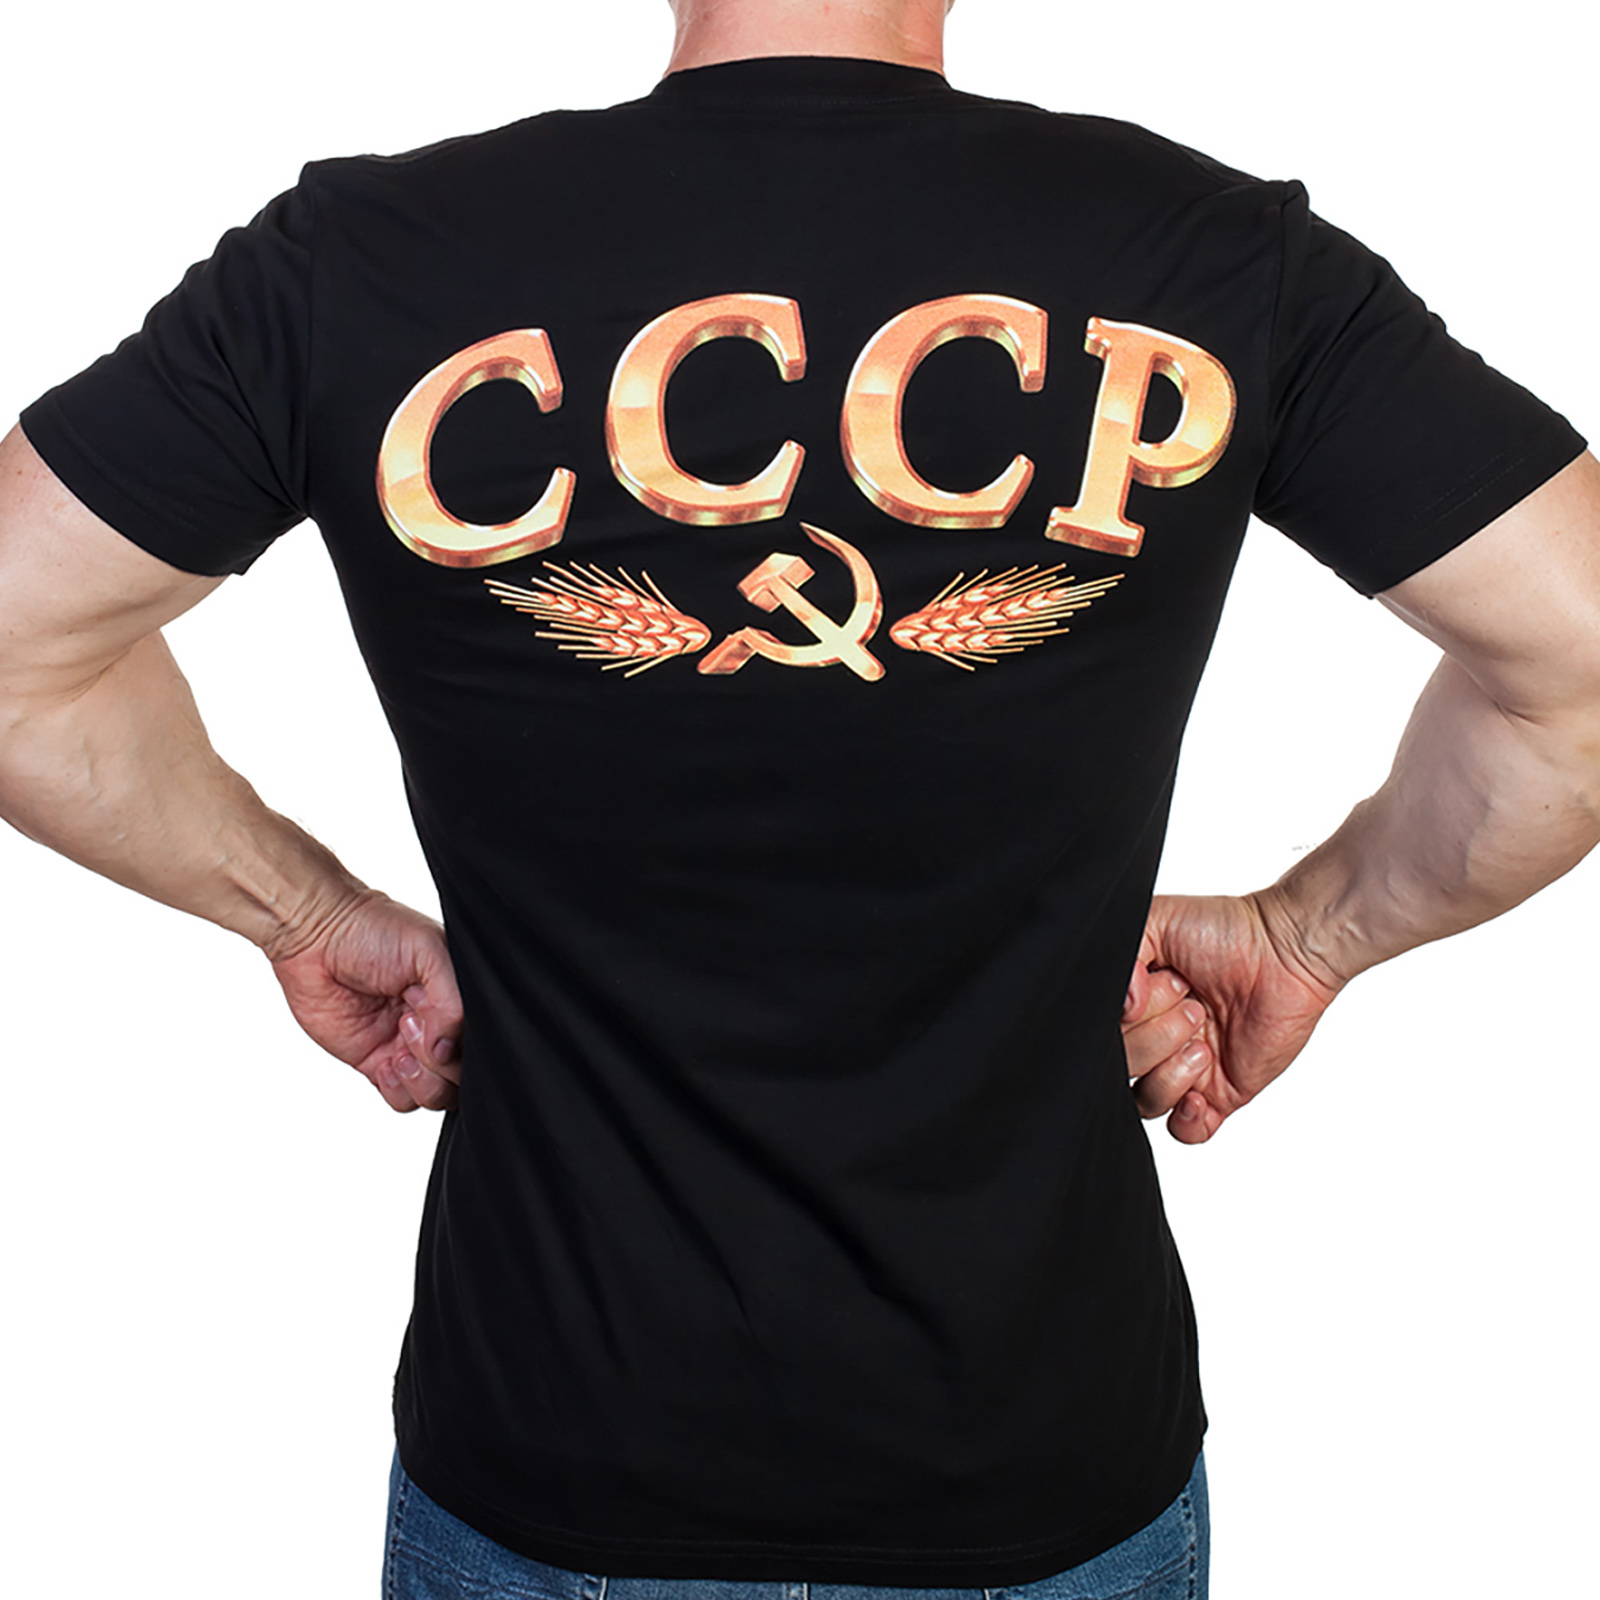 Модная мужская футболка с патриотическим 3D-принтом «РОЖДЁН в СССР». 